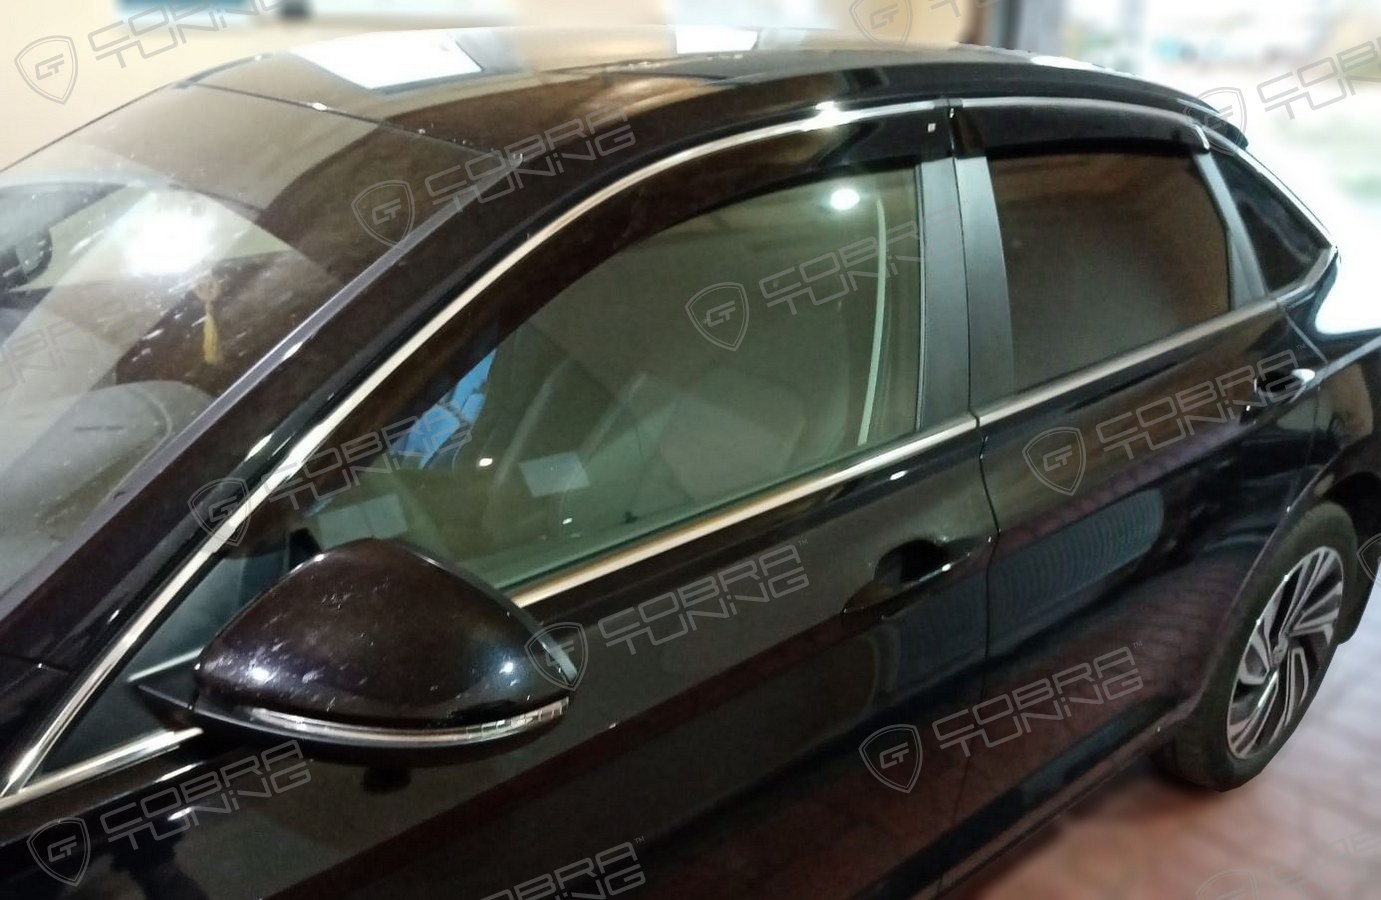 Отзыв - ветровики Cobra Tuning на окна Фольксваген Джетта 2020 седан